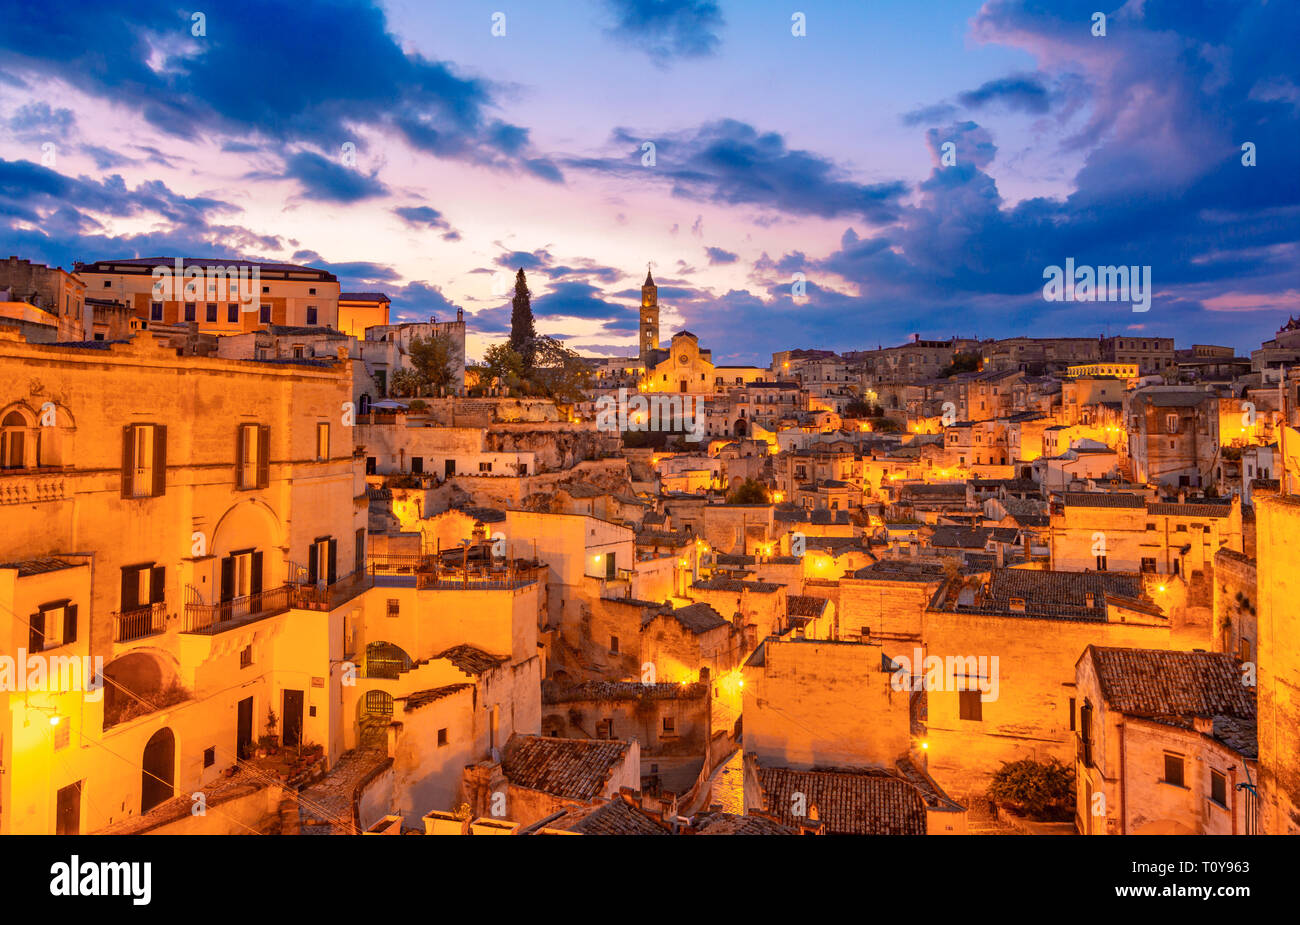 Matera, Basilicate, Italie : vue de la nuit de la vieille ville - Sassi di Matera, Capitale européenne de la culture, à l'aube Banque D'Images